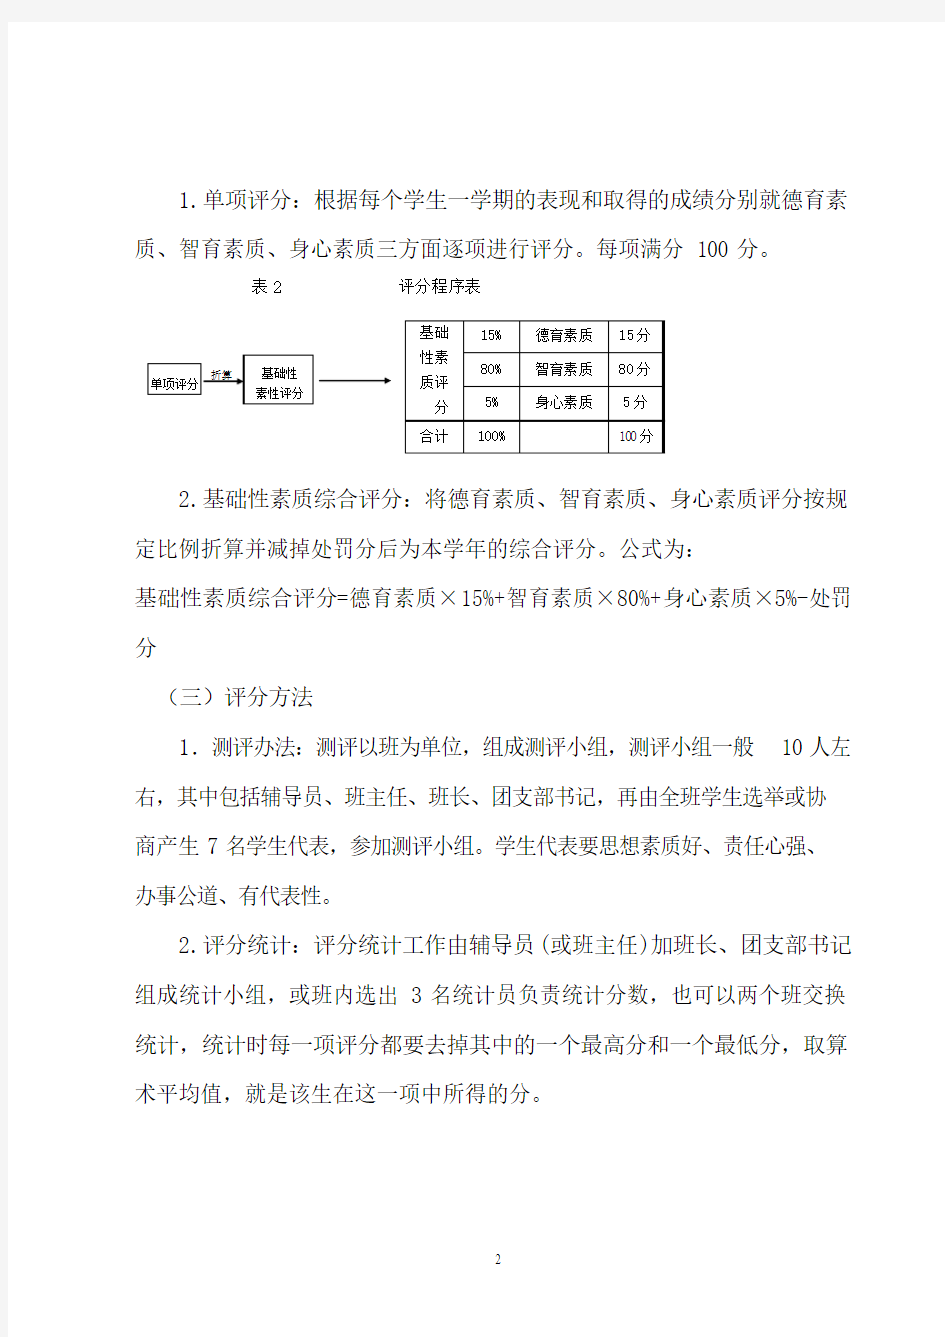 辽宁工程技术大学学生综合素质测评办法(修订)